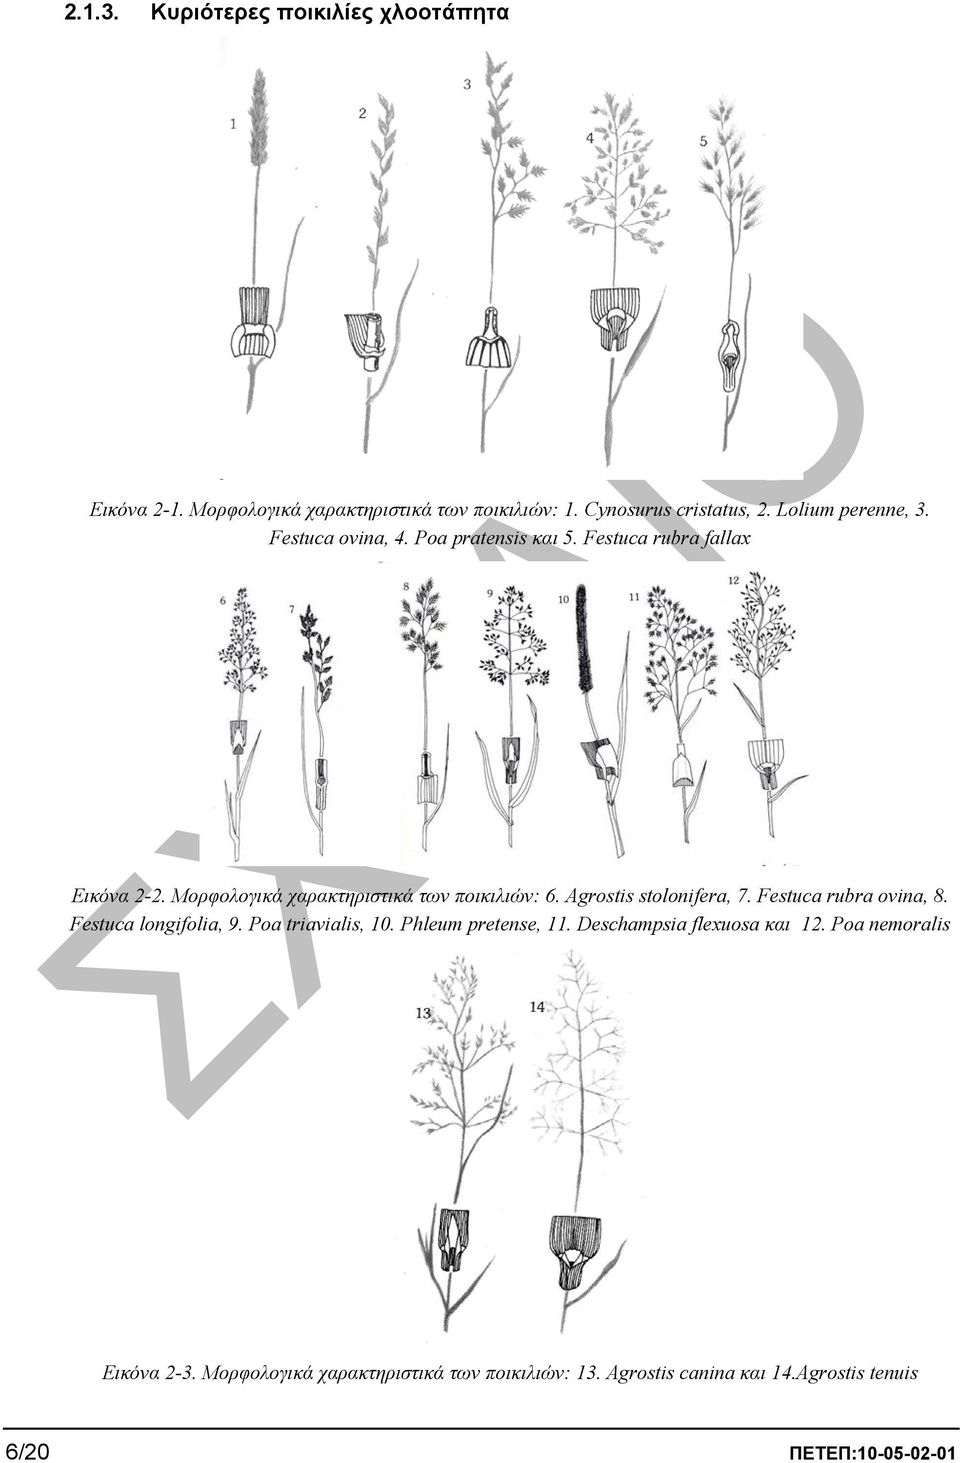 Μορφολογικά χαρακτηριστικά των ποικιλιών: 6. Agrostis stolonifera, 7. Festuca rubra ovina, 8. Festuca longifolia, 9.